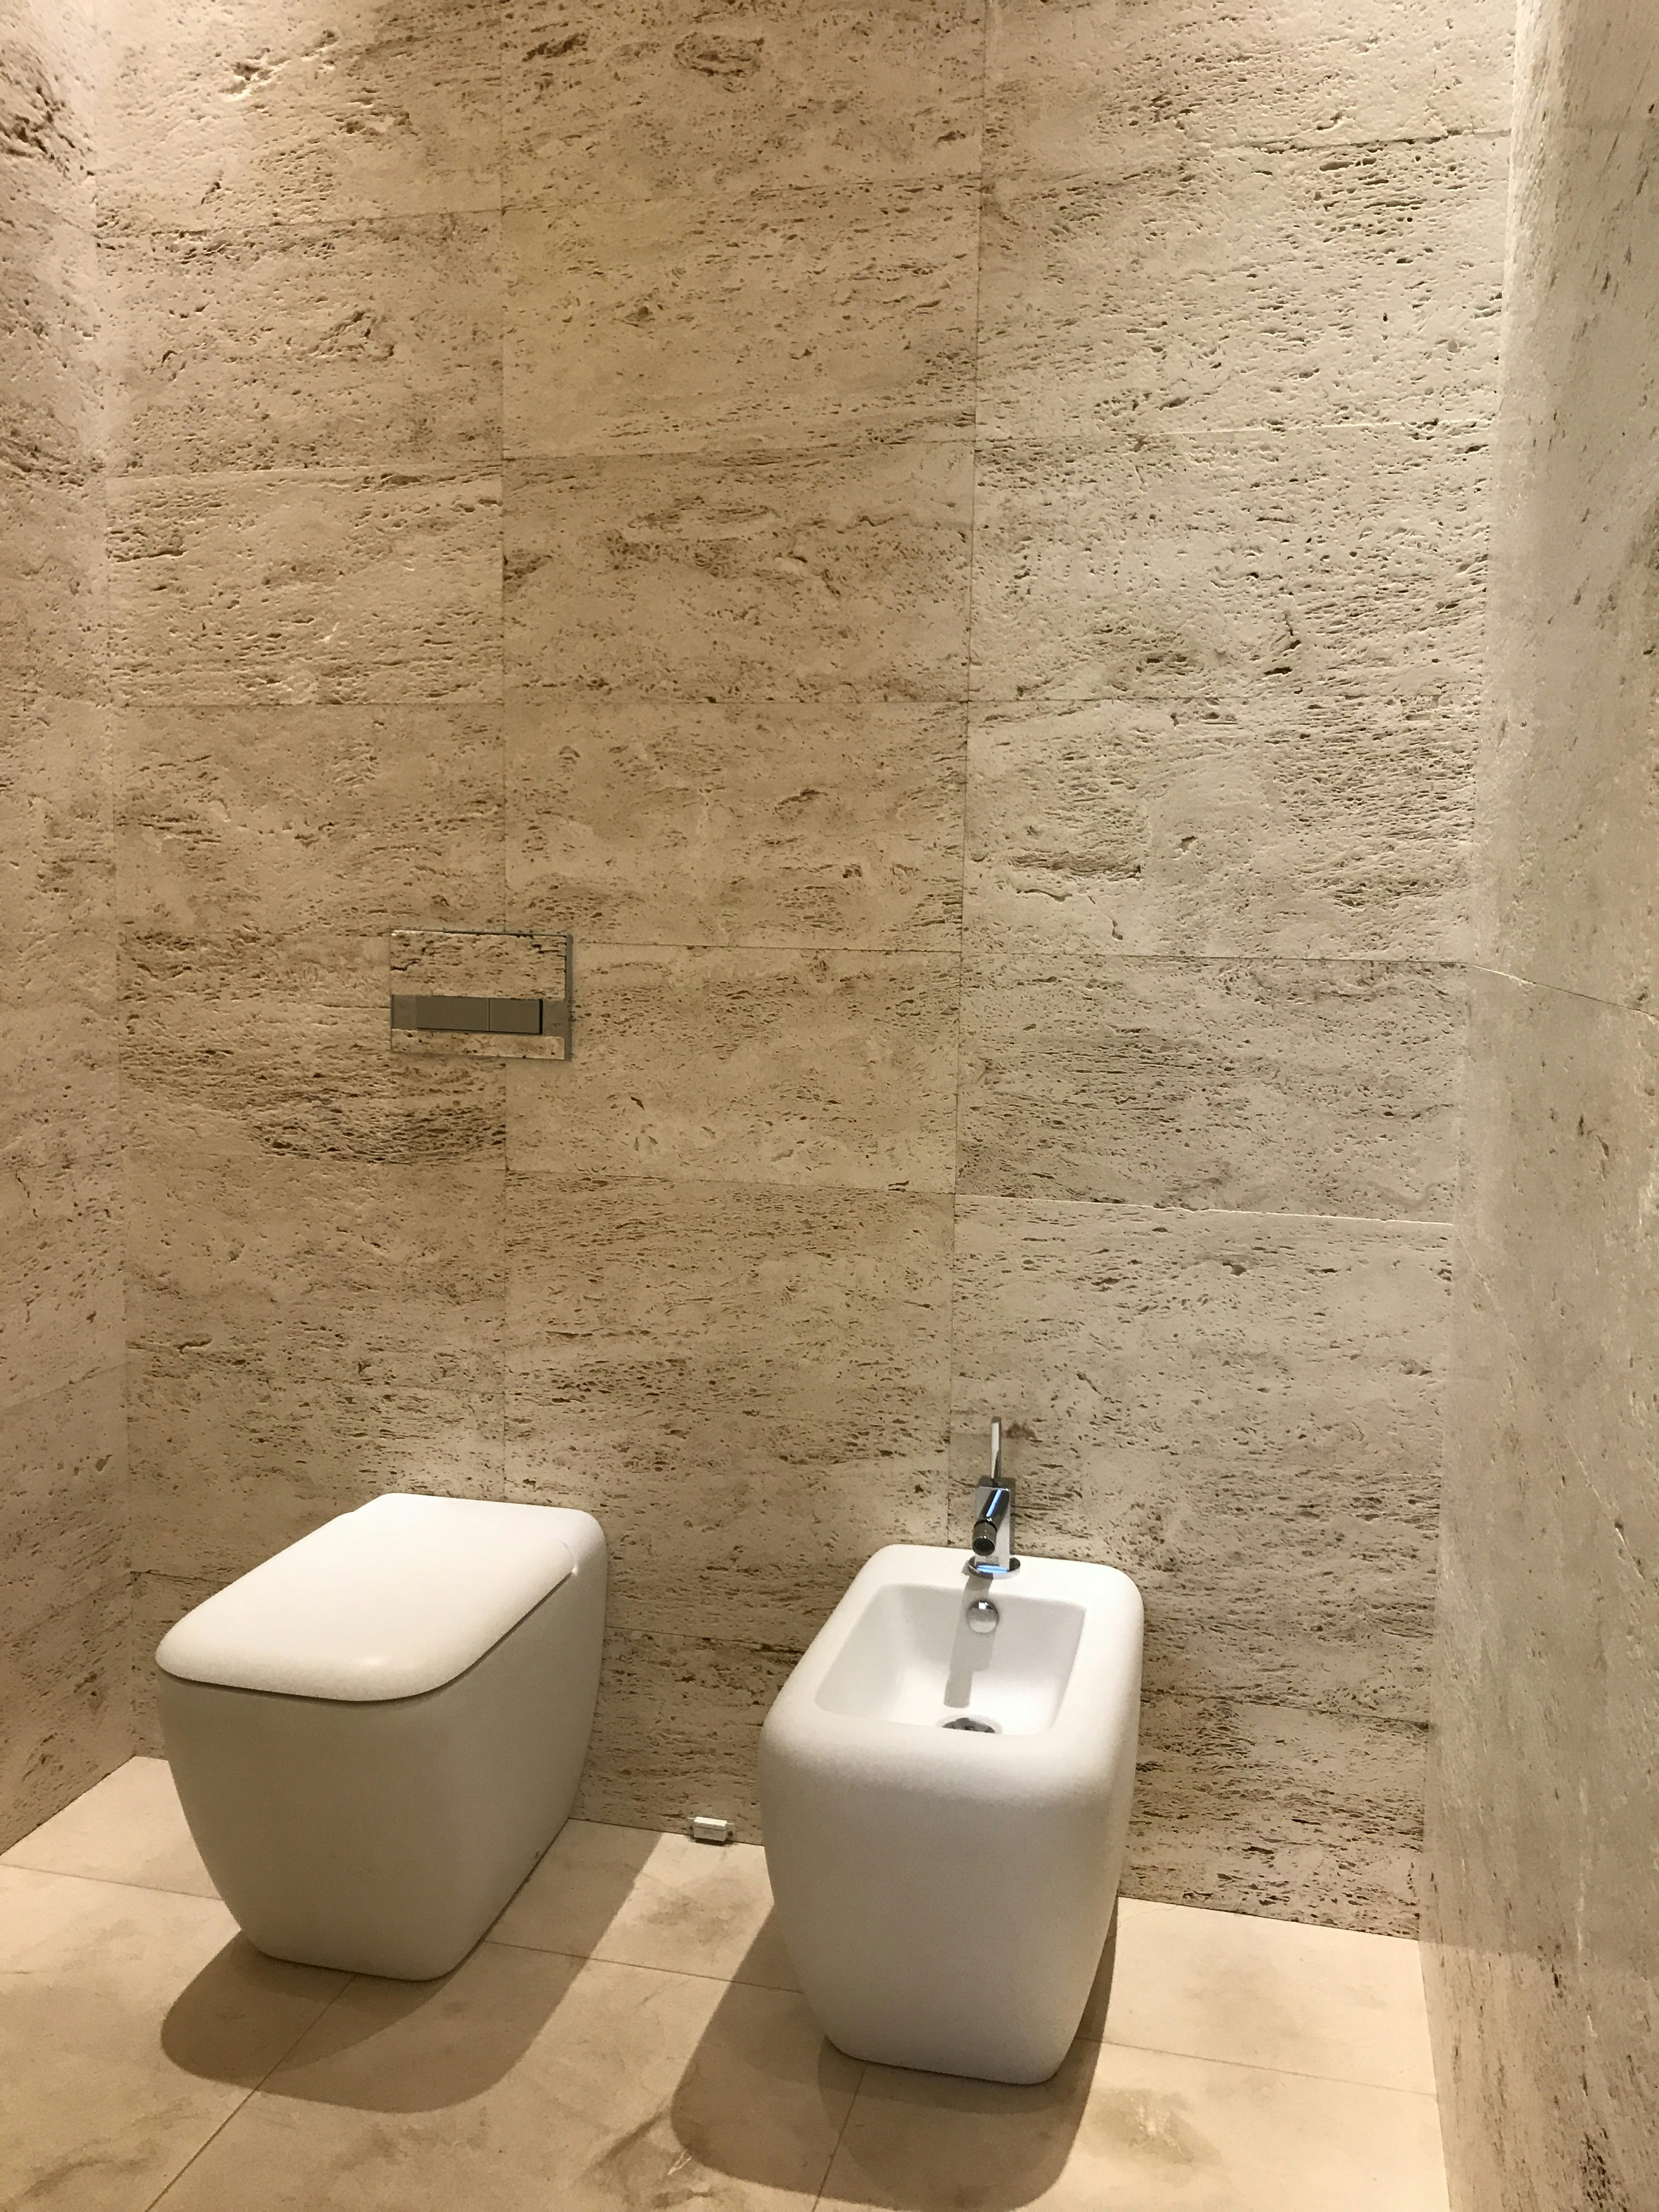 Bidet built in toilet for ultimate hygiene